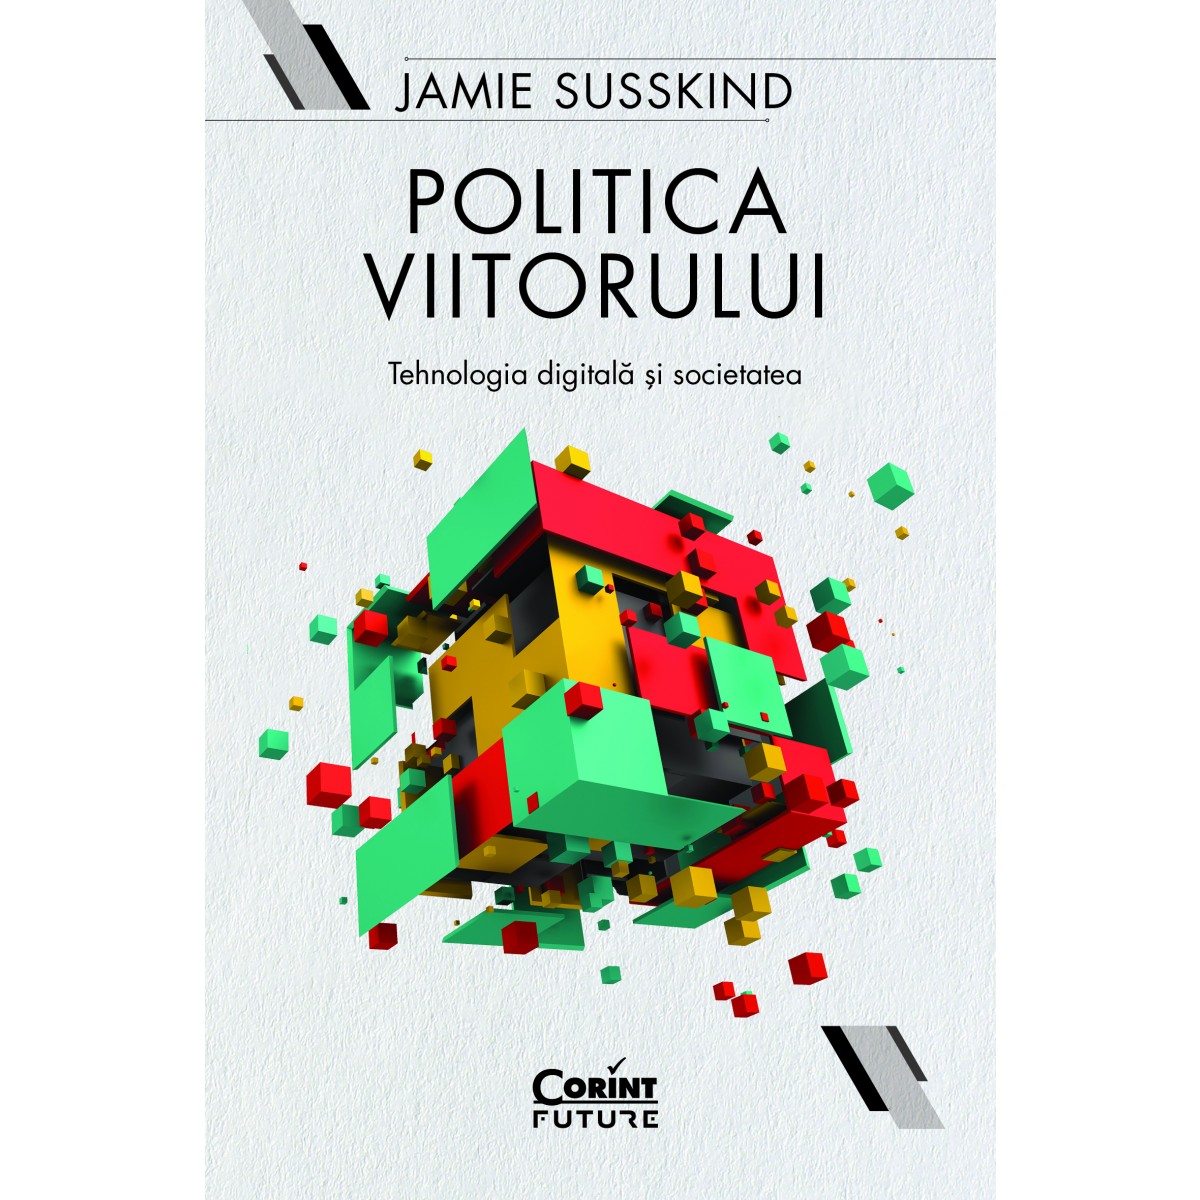 Politica Viitorului de Jamie Susskind‎ - merită citită?